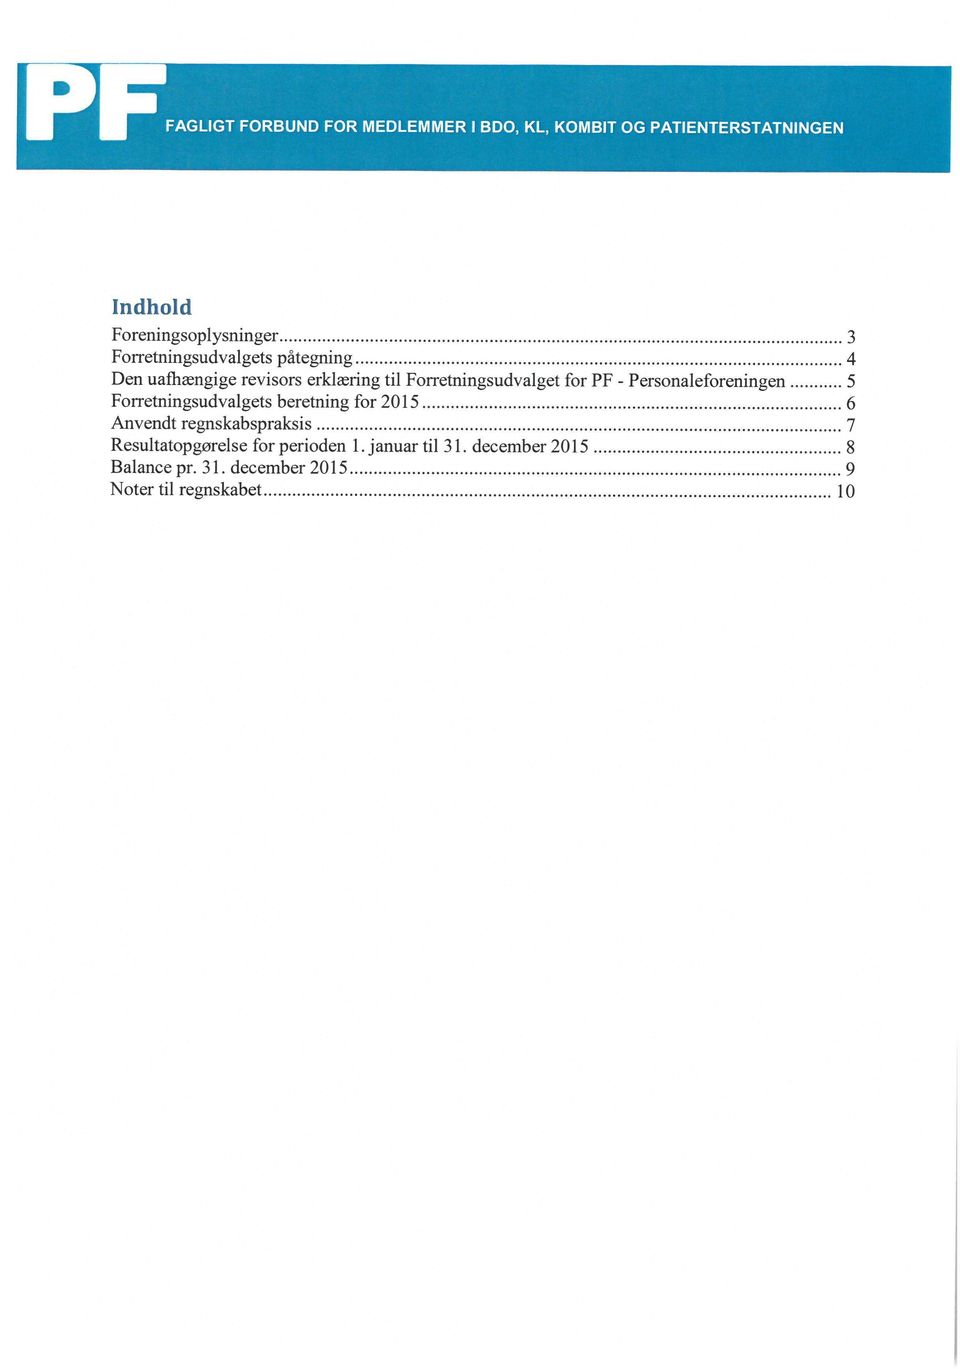 Personaleforeningen 5 Forretningsudvalgets beretning for 2015 6 Anvendt regnskabspraksis 7